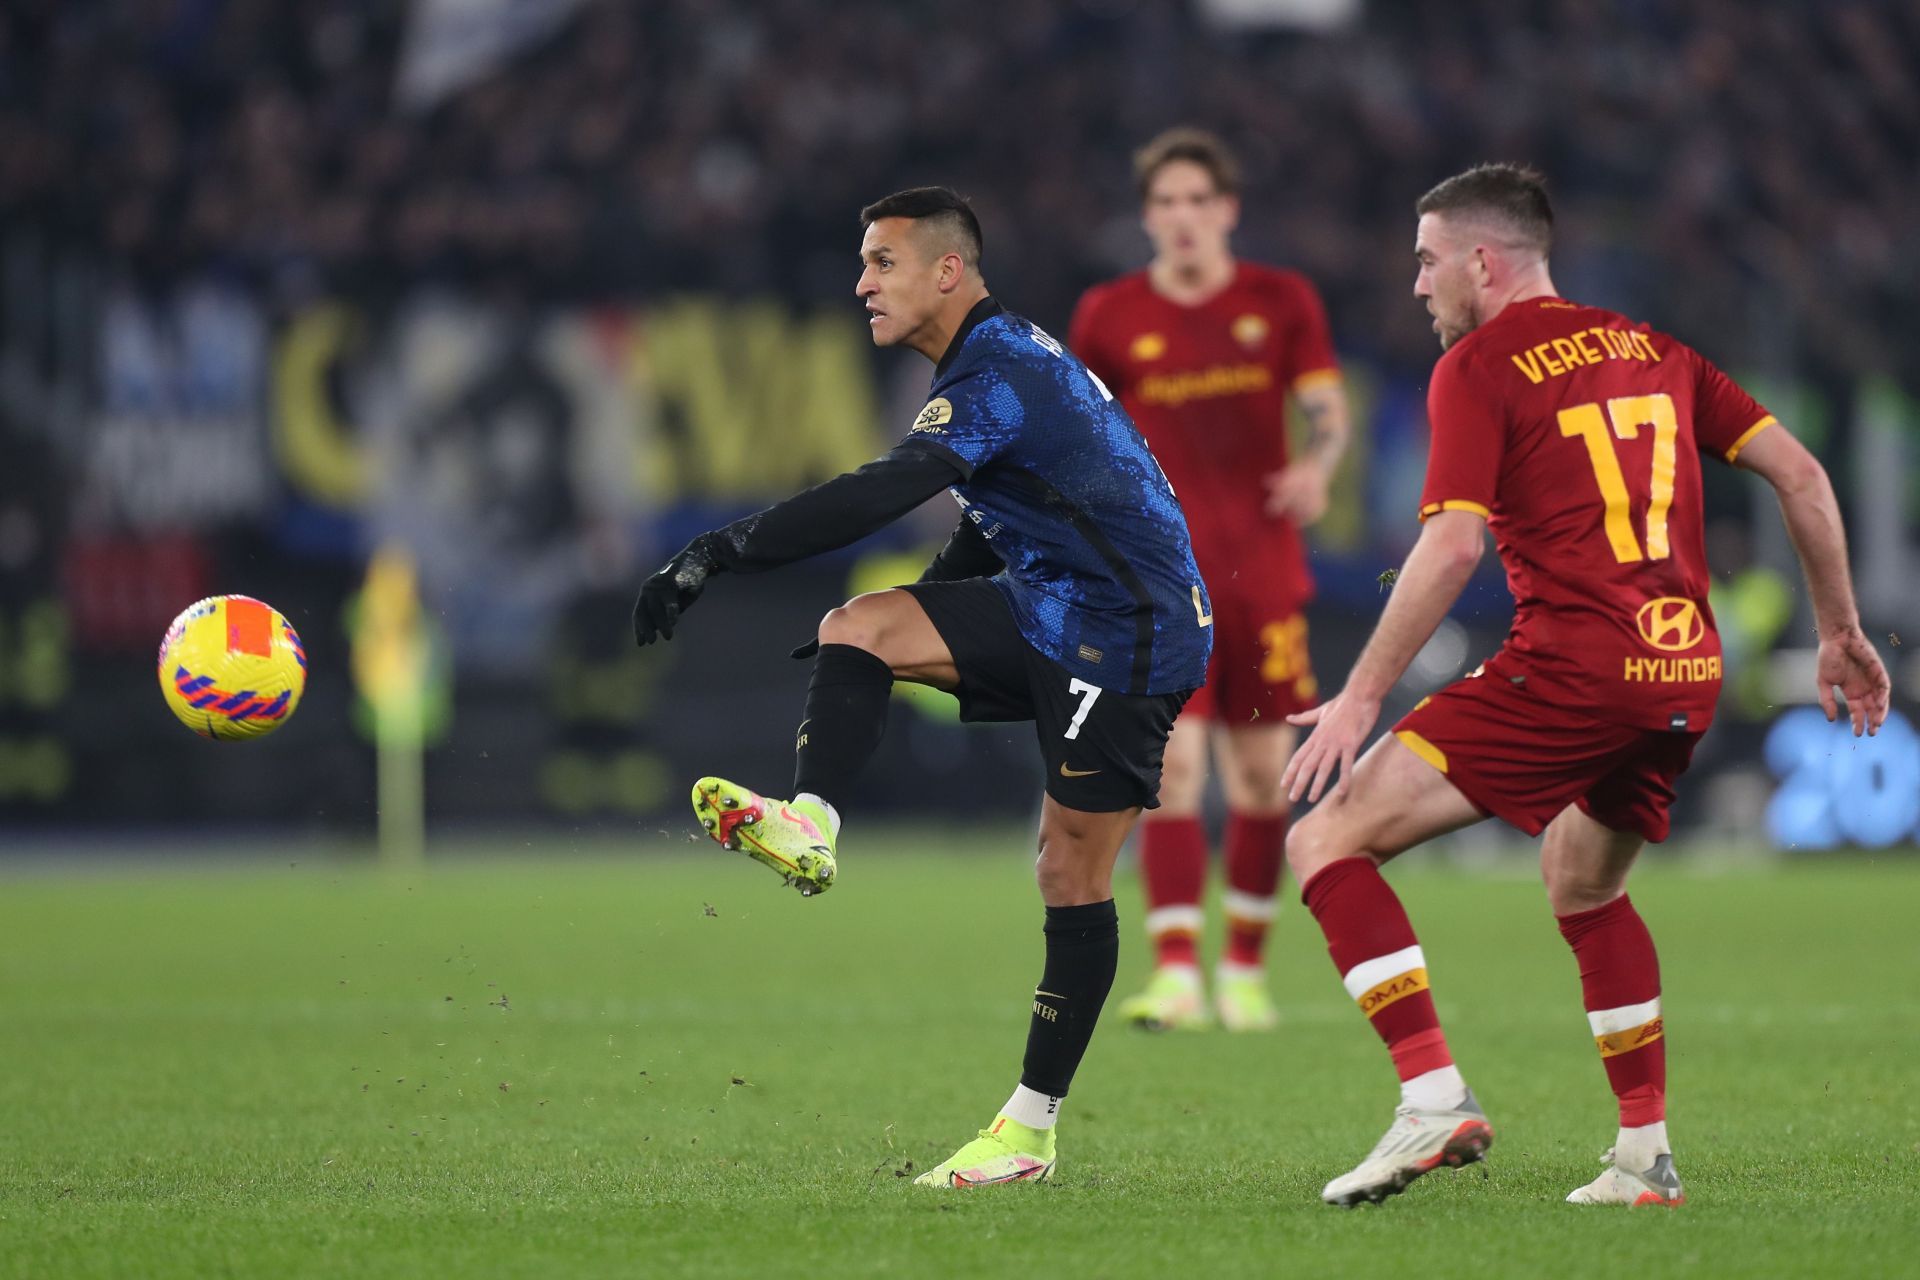 AS Roma take on Inter Milan this weekend